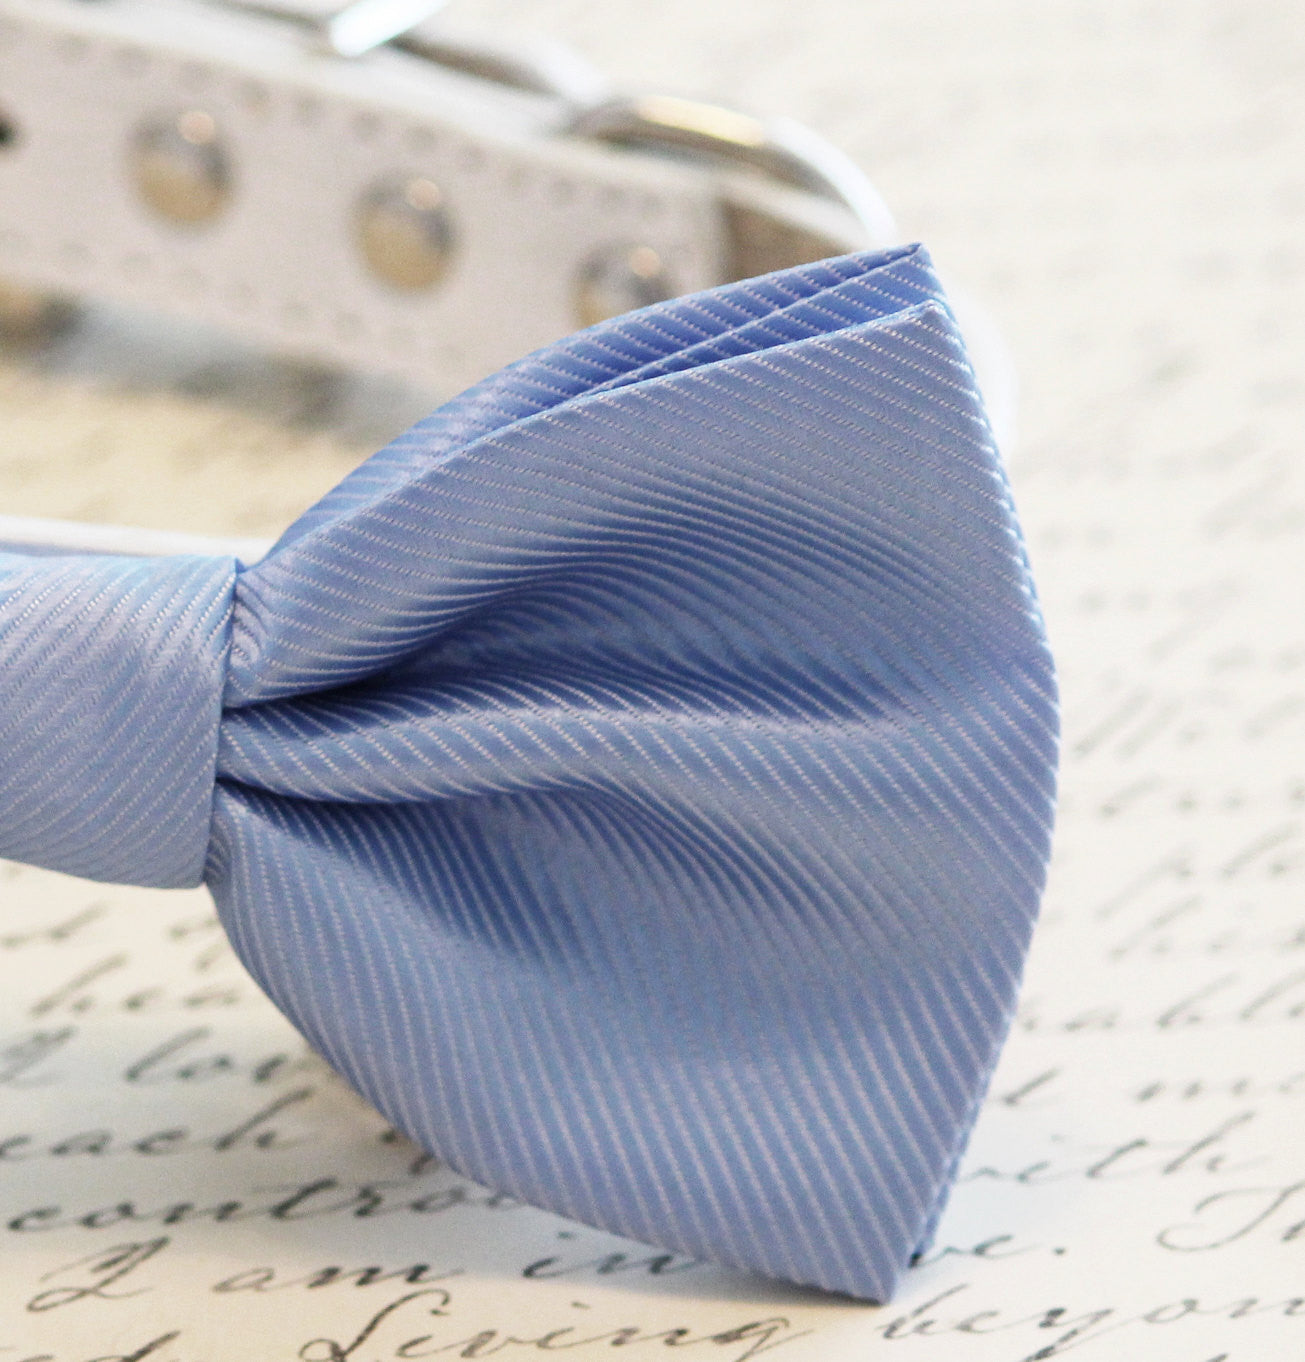 Blue Dog Bow Tie , High quality leather and Fabric, Wedding Dog Collar-Blue wedding accessory. Sky , Wedding dog collar